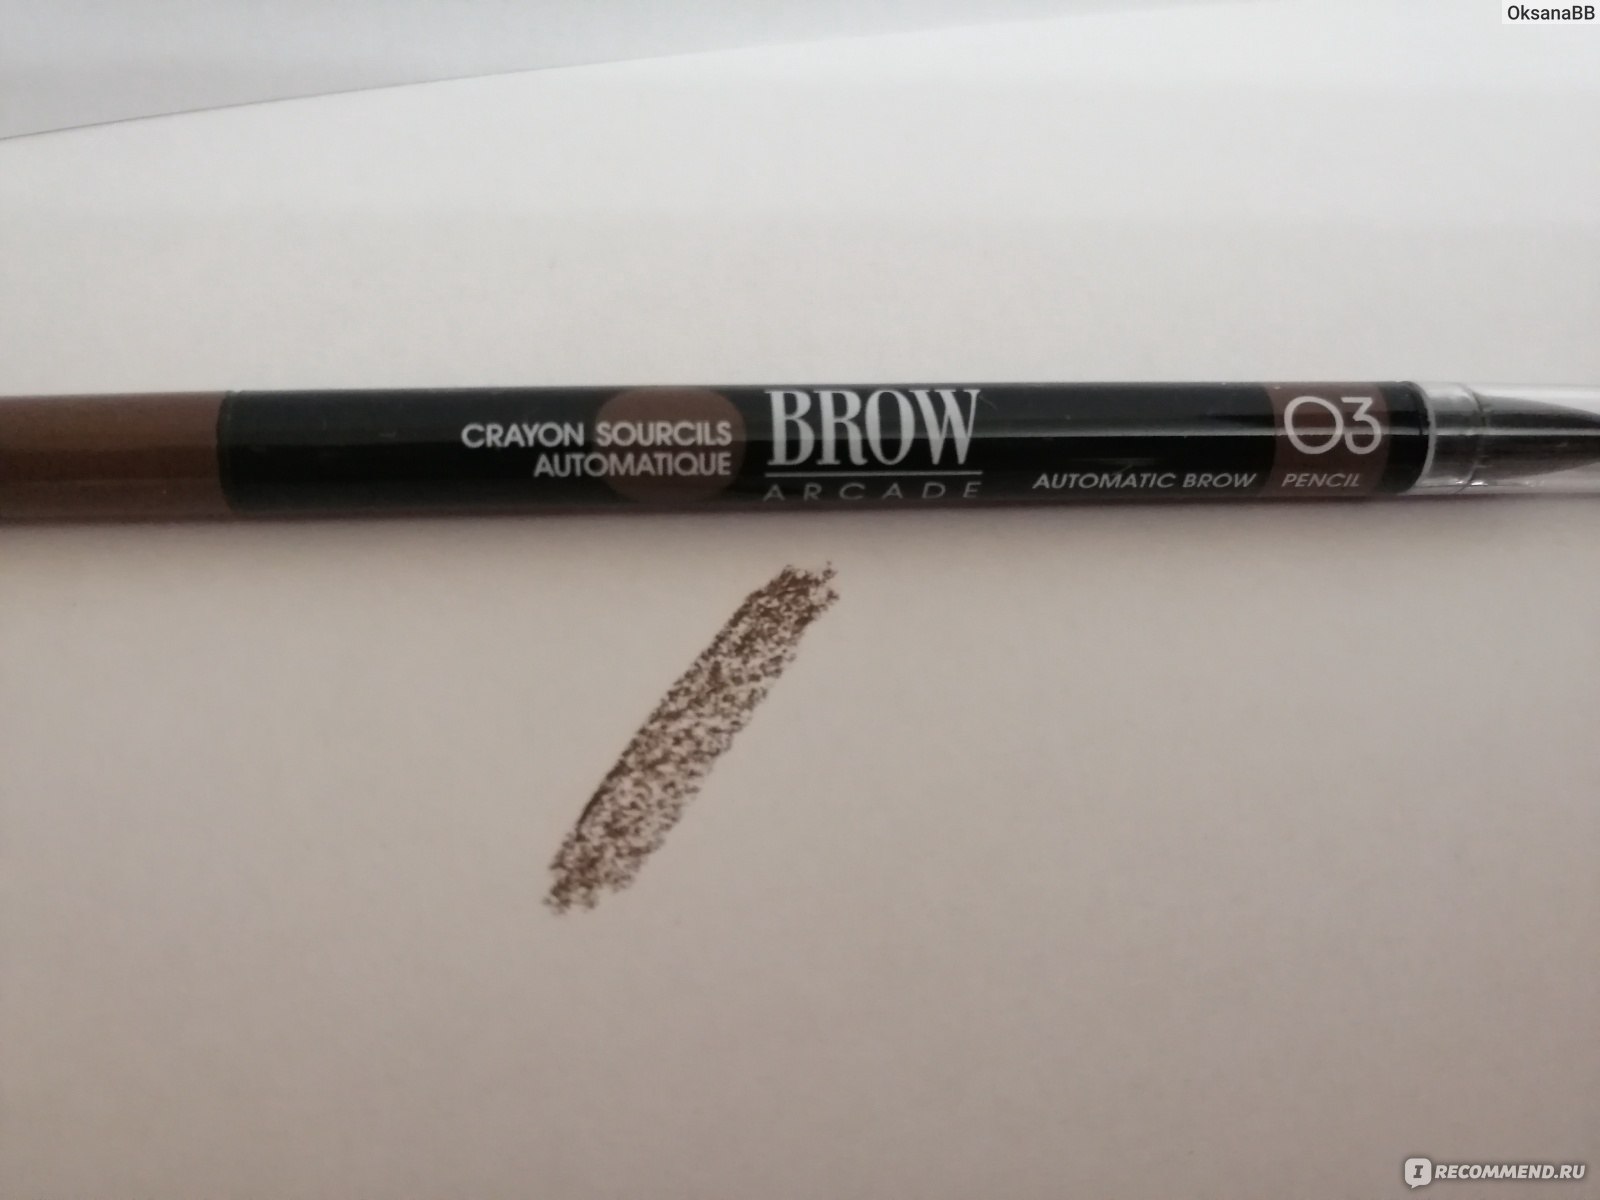 Vivienne Sabo Brow Arcade Automatic Eyebrow Pencil